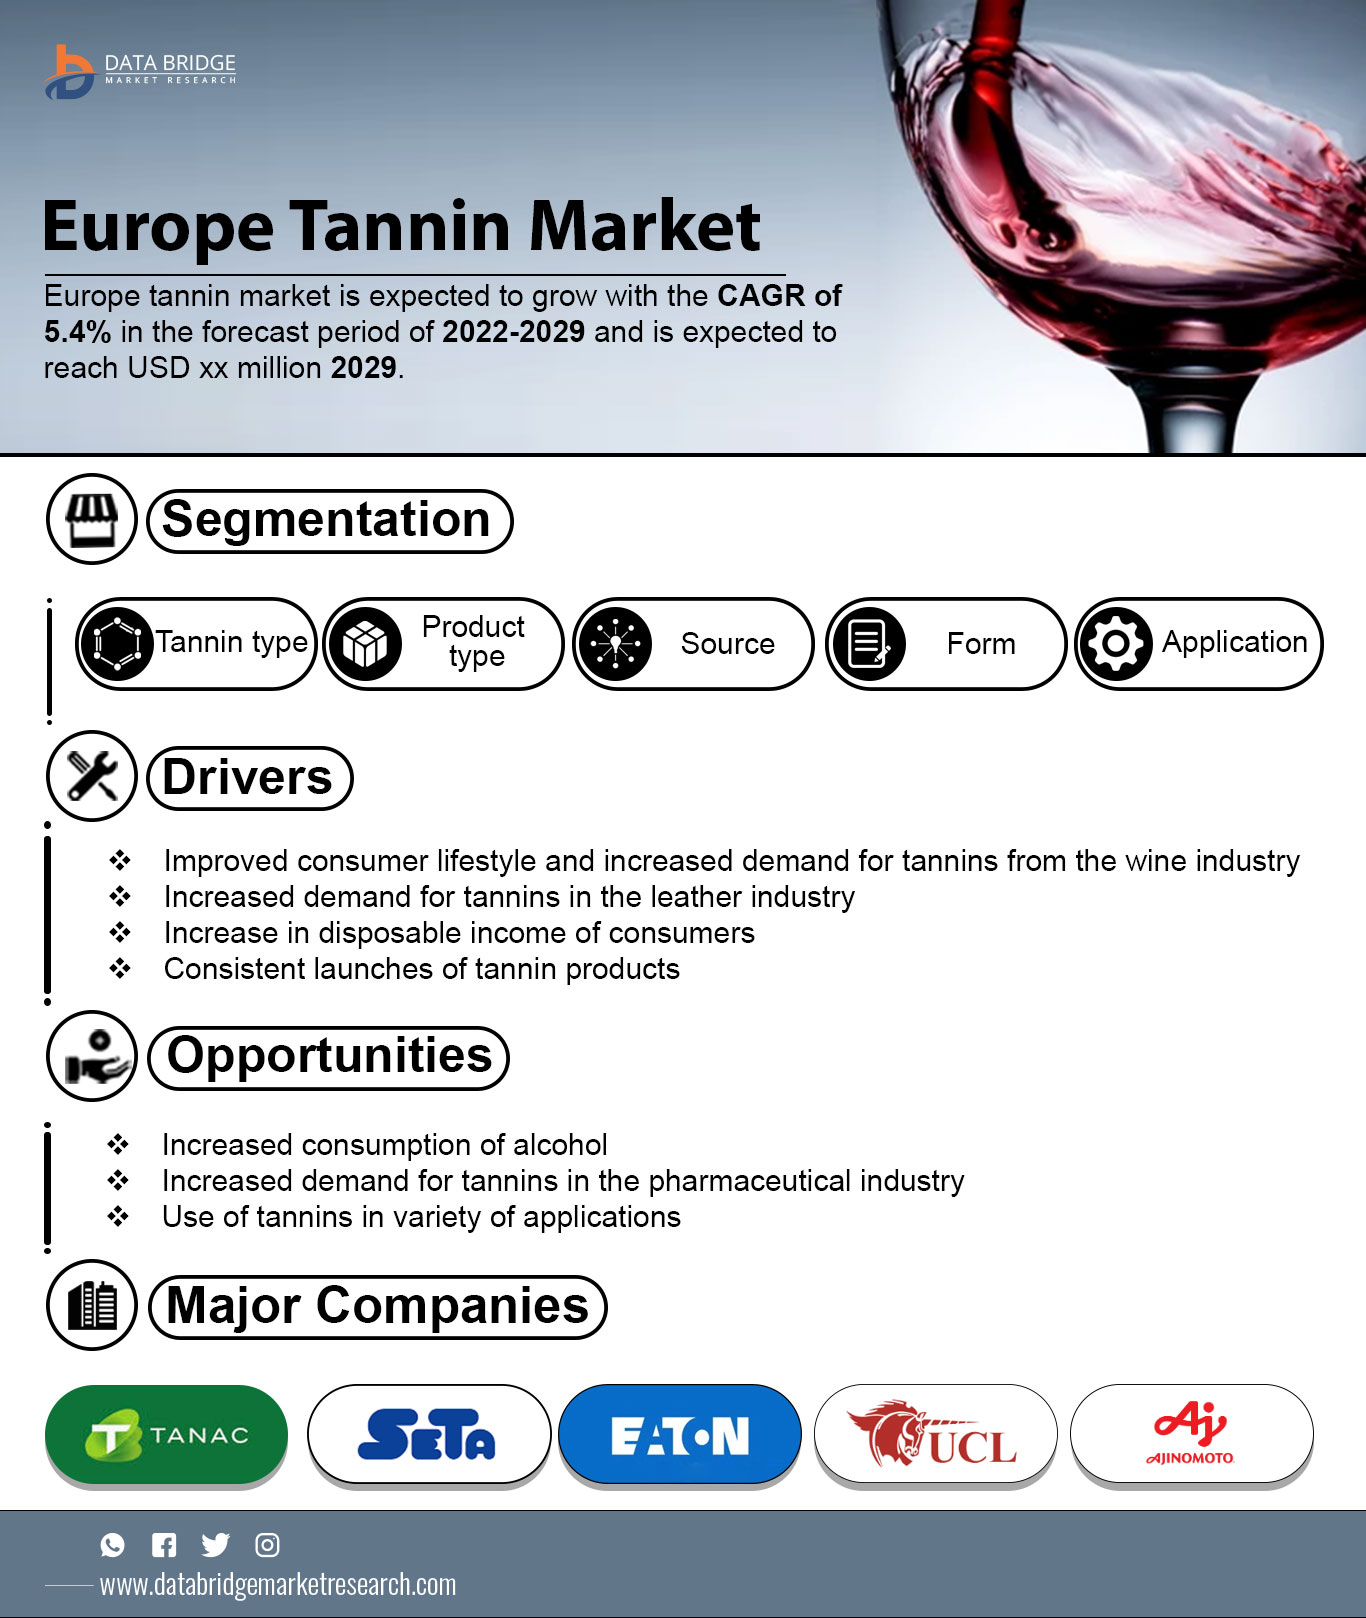 Europe Tannin Market